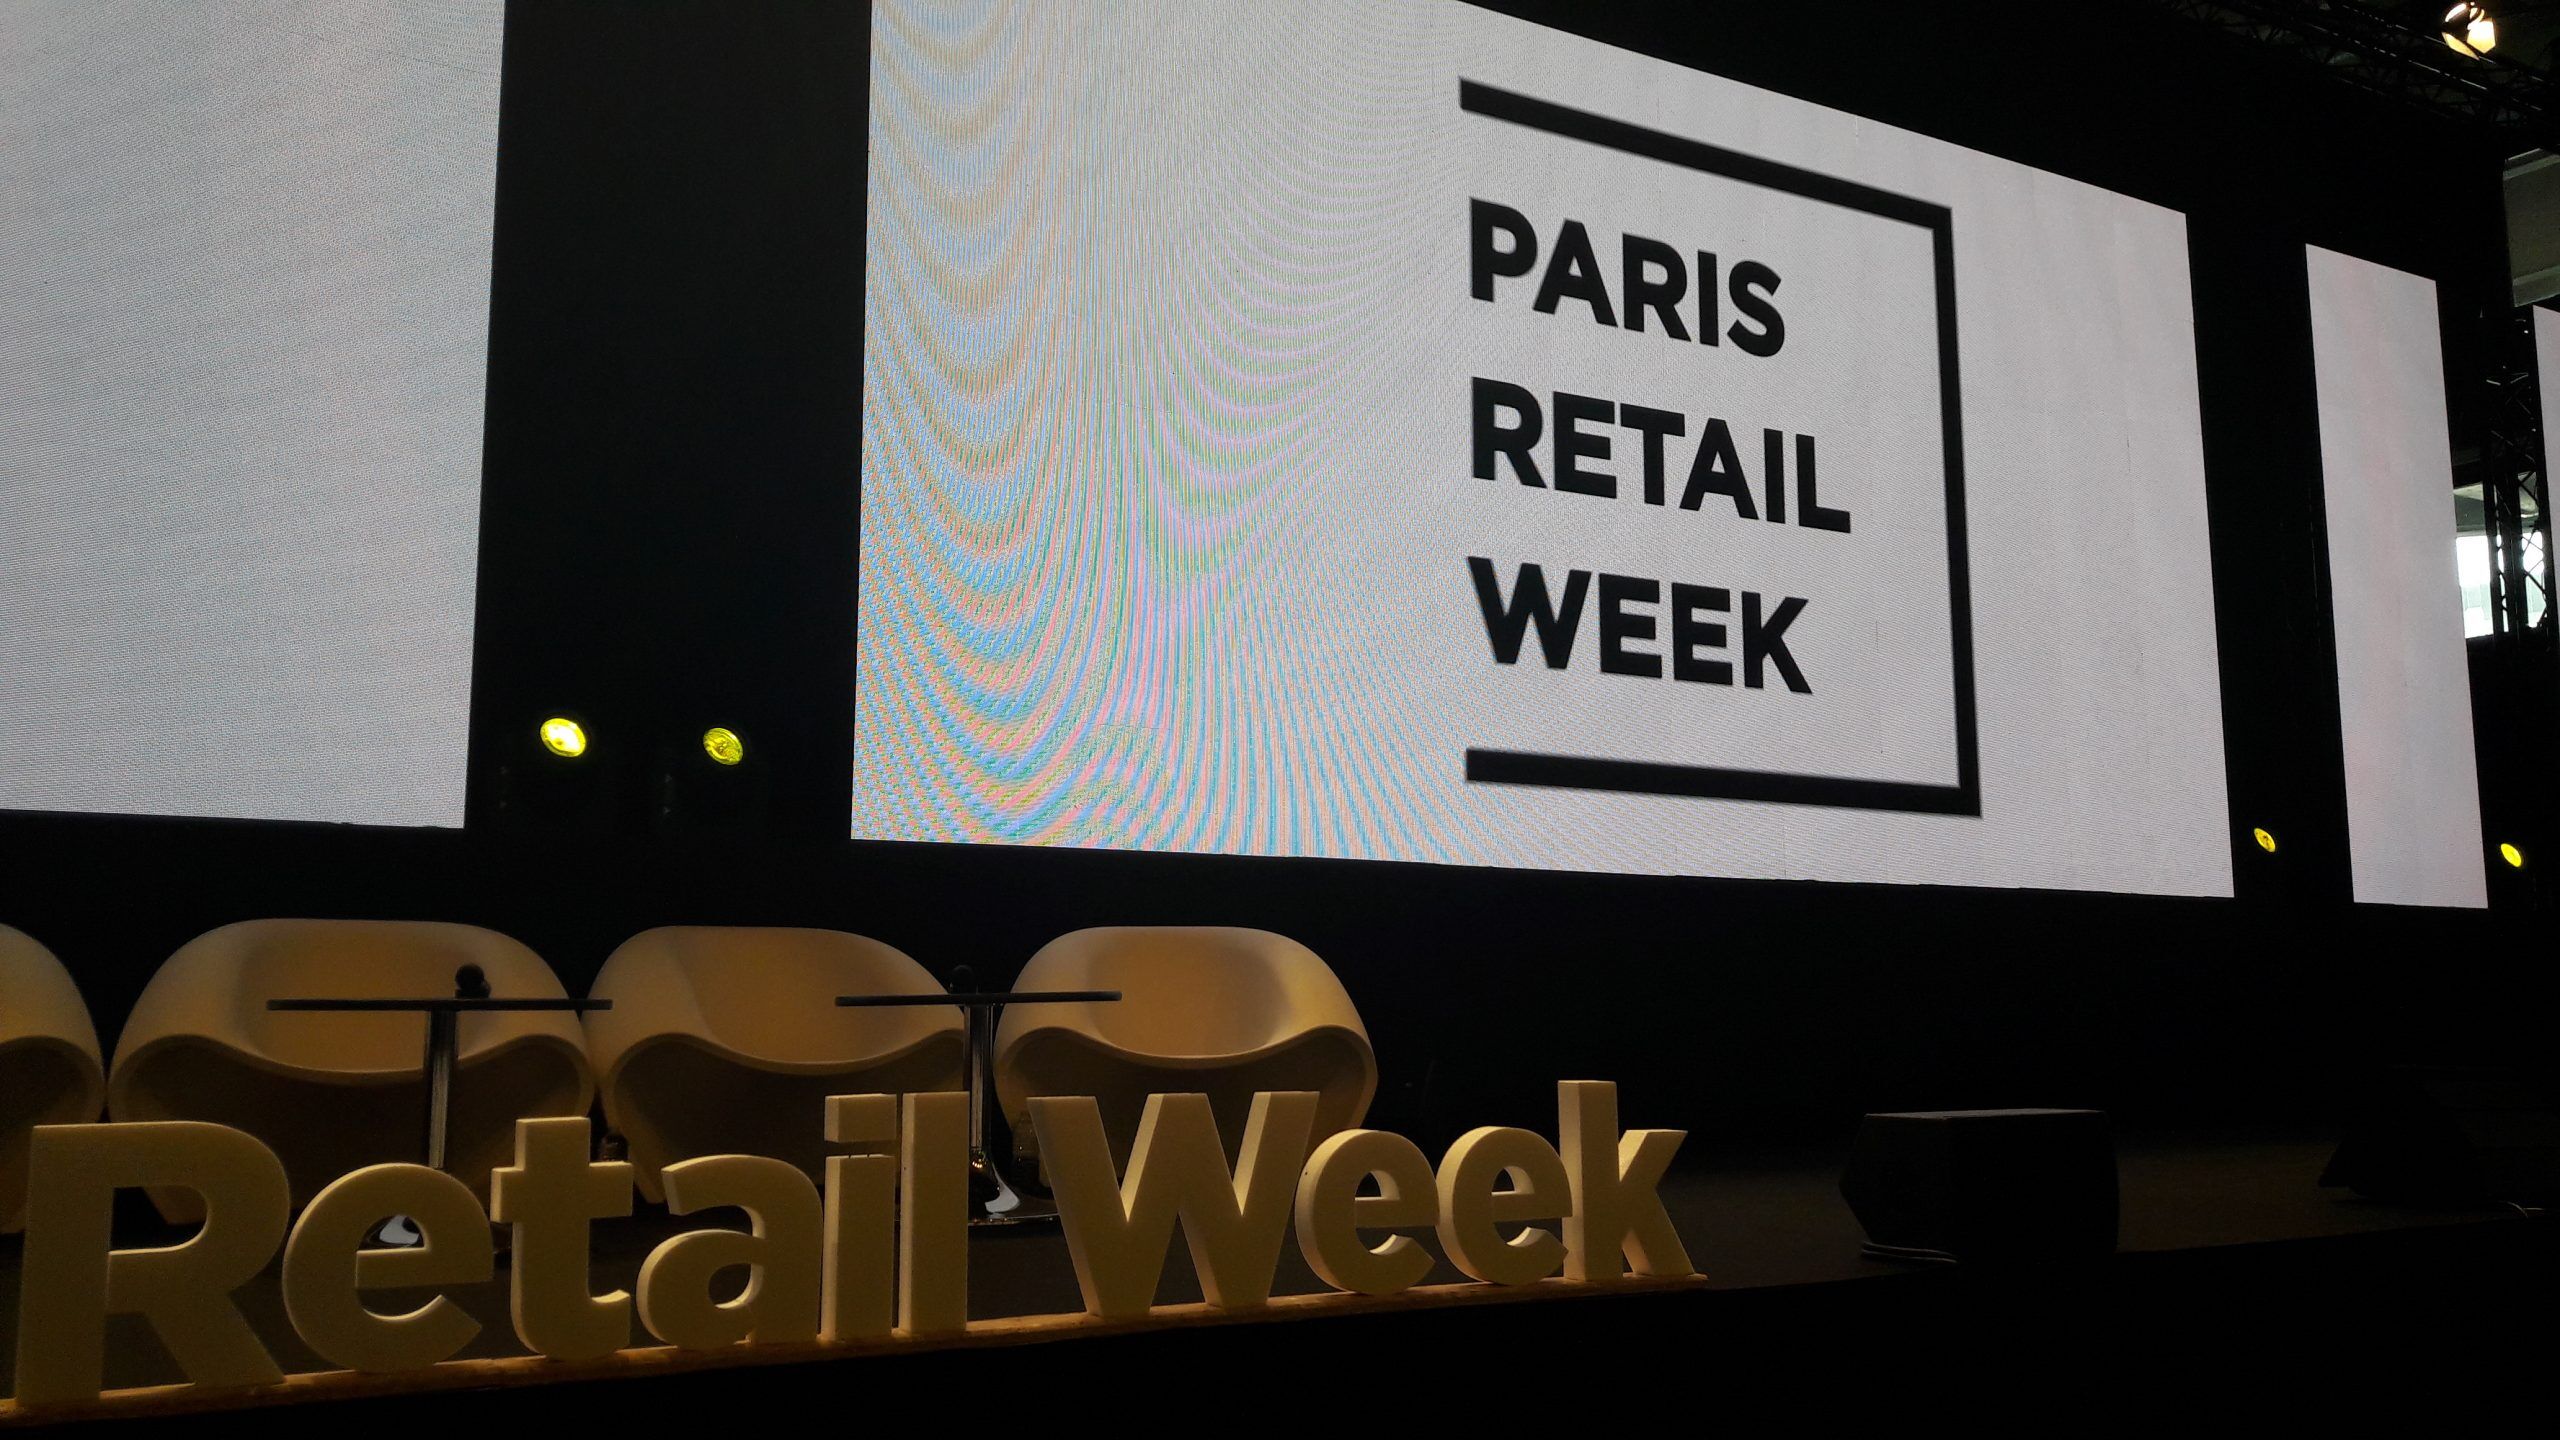 Paris Retail Week 2019 : 6 points clés à retenir